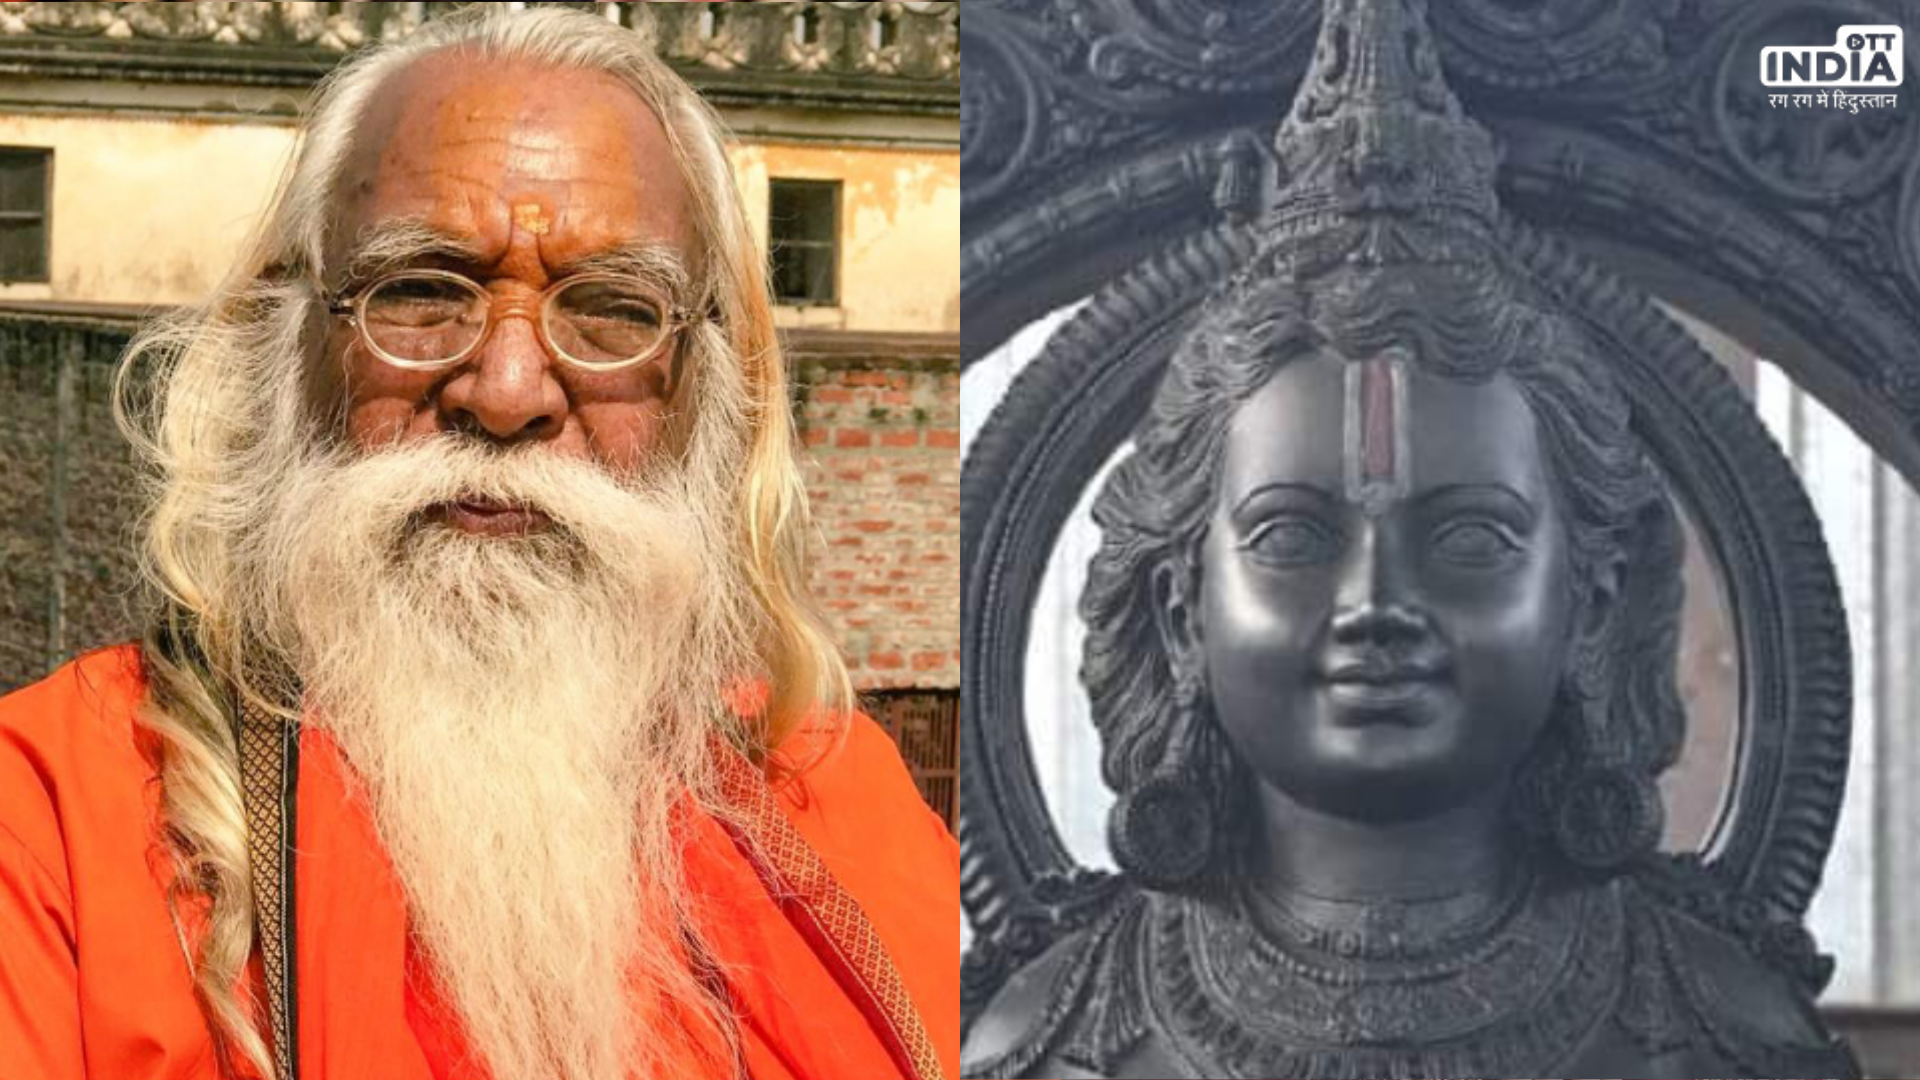 Ram Mandir: पुजारी सत्येन्द्र दास ने कहा प्राण प्रतिष्ठा से पहले प्रतिमा की आंखों से कपड़ा हटाना गलत